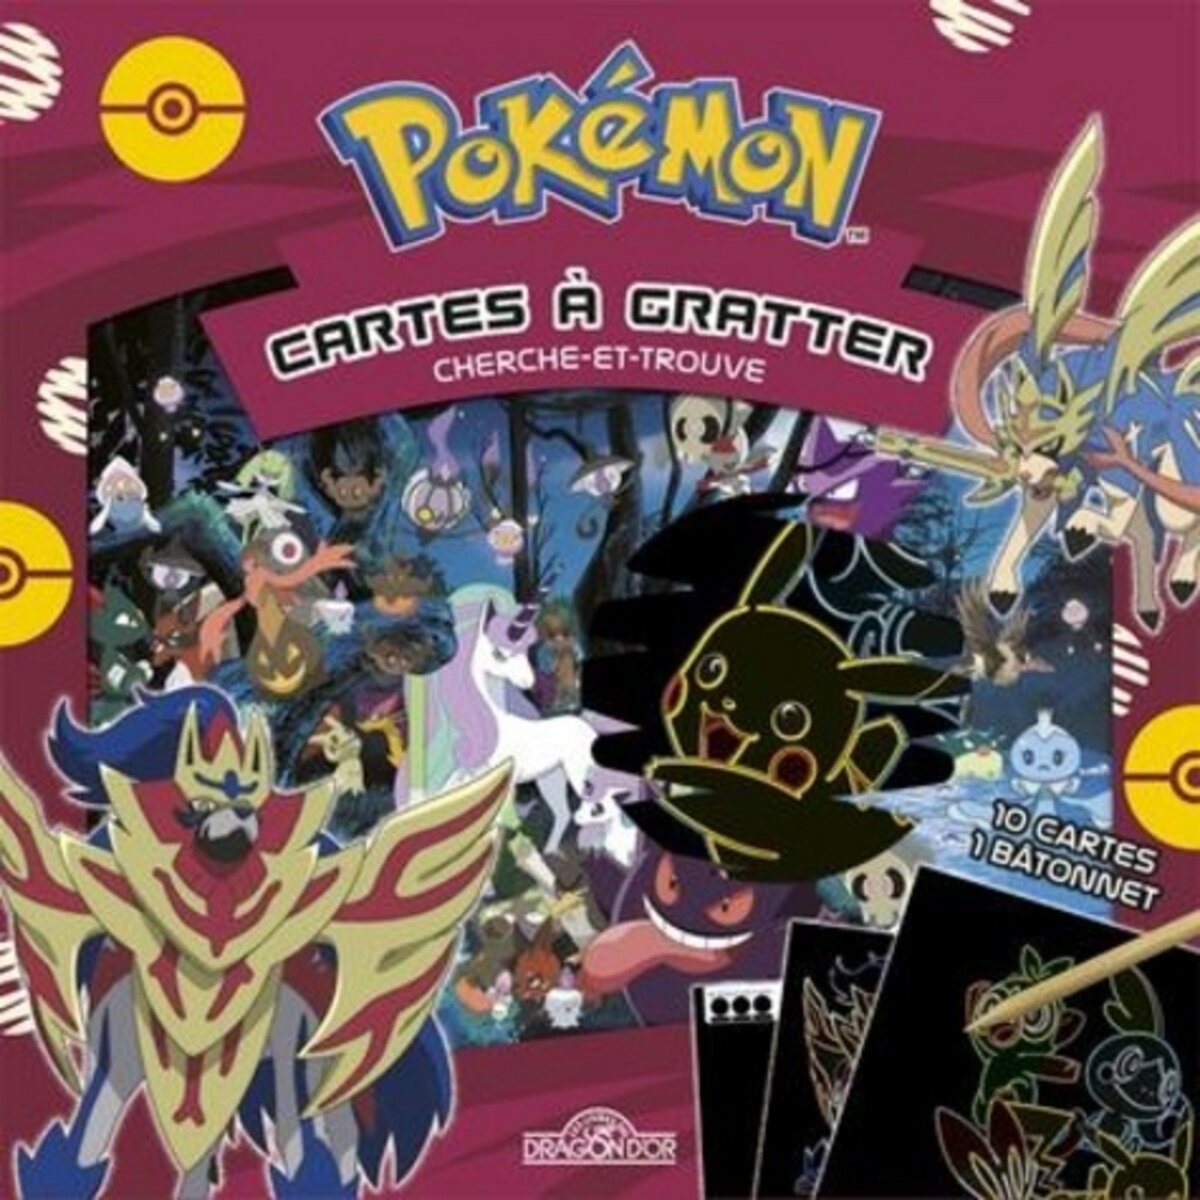  POKEMON CARTES A GRATTER. CHERCHE-ET-TROUVE. AVEC 10 CARTES ET 1 BATONNET, The Pokémon Company